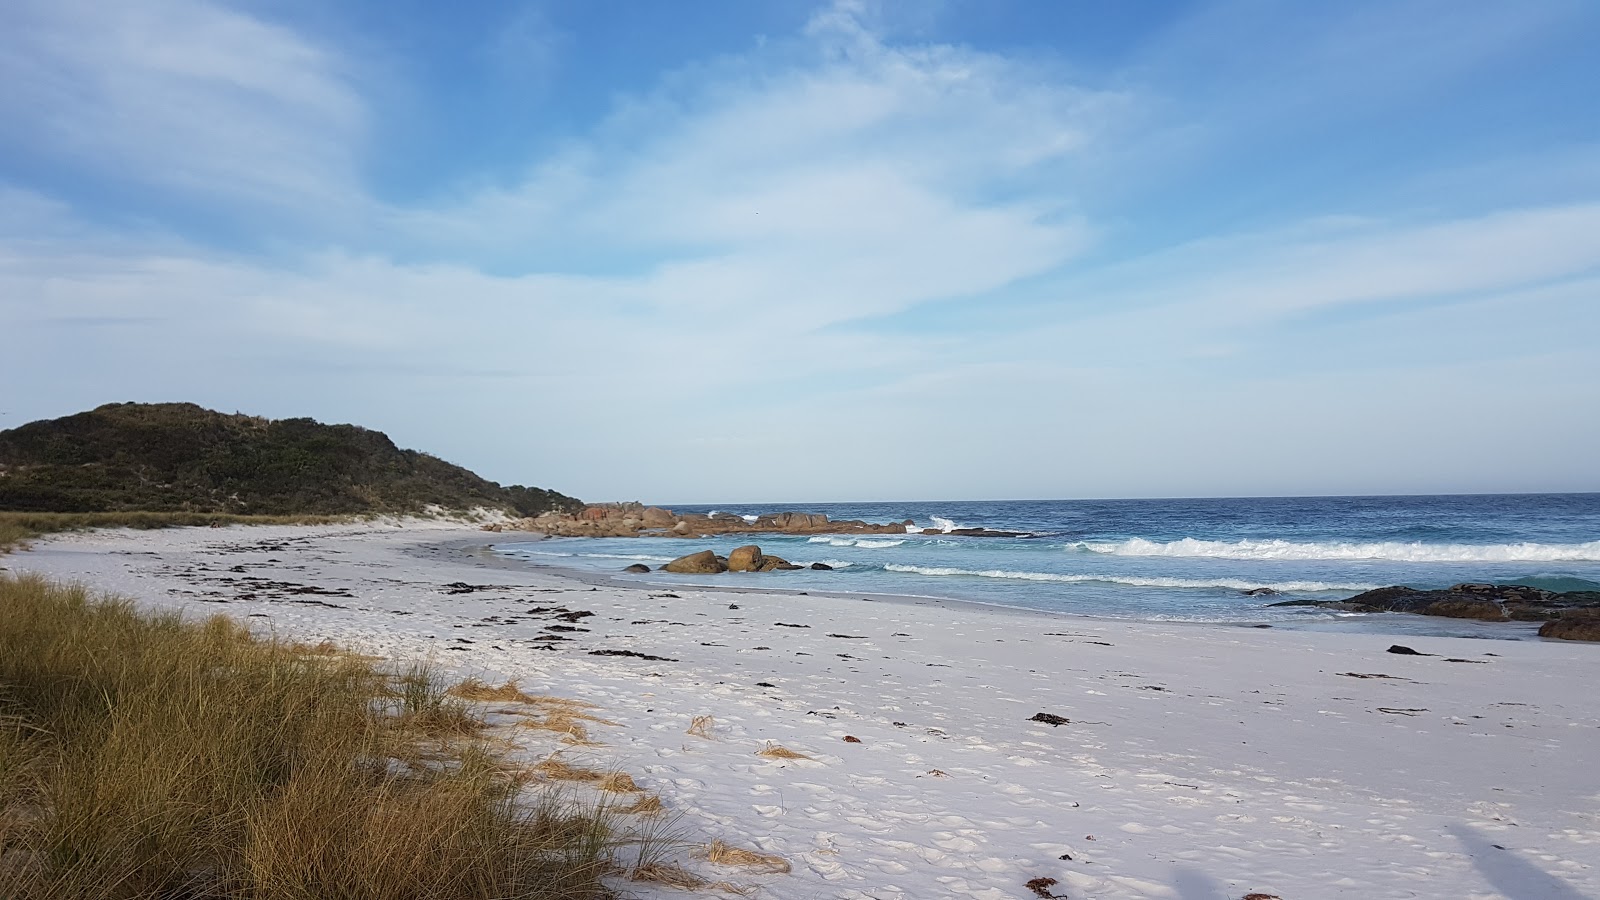 Fotografija Jeanneret Campsite Beach nahaja se v naravnem okolju